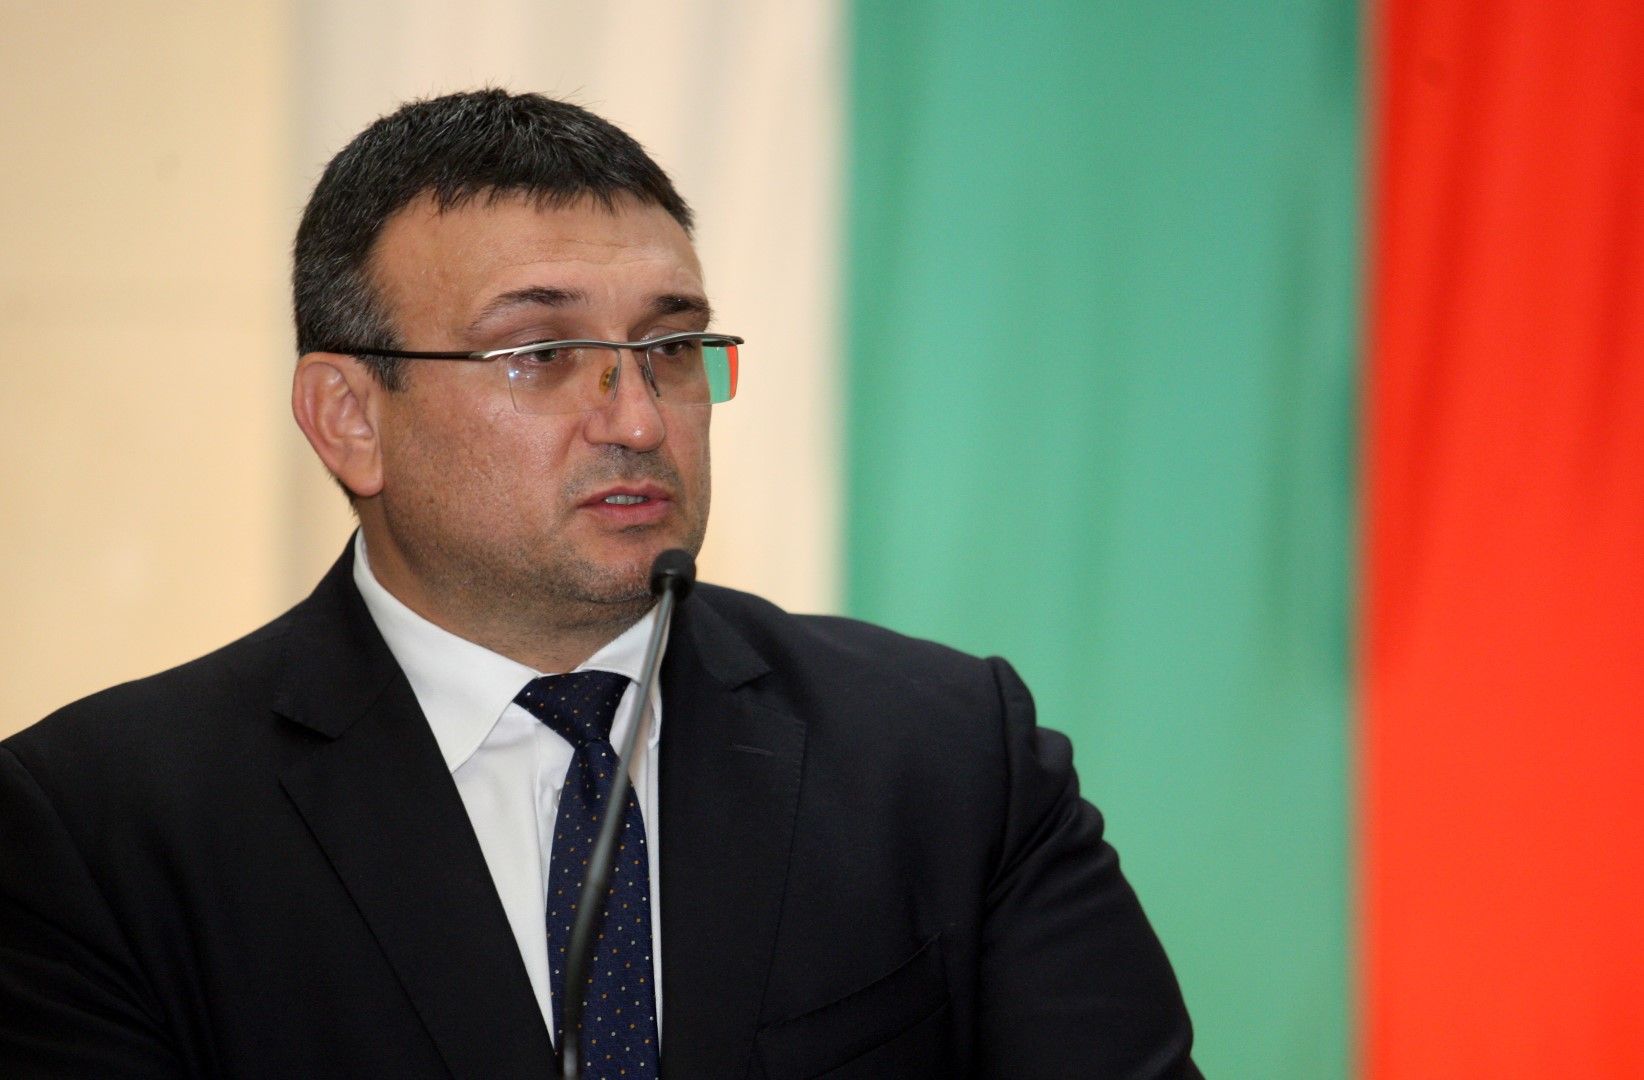 Младен Маринов заяви, че няма право да издава повече данни по случая